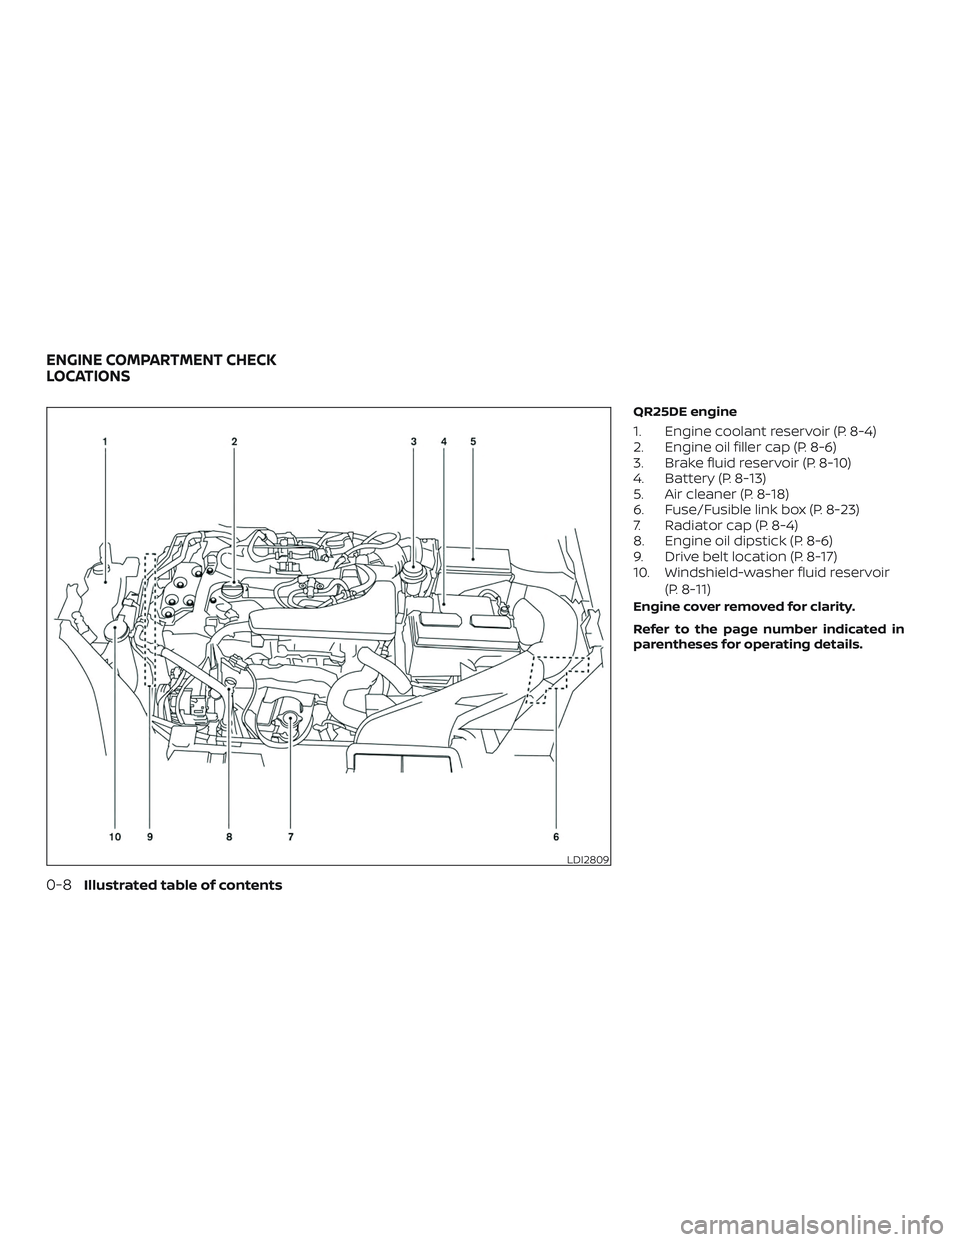 NISSAN ROGUE 2020  Owner´s Manual QR25DE engine
1. Engine coolant reservoir (P. 8-4)
2. Engine oil filler cap (P. 8-6)
3. Brake fluid reservoir (P. 8-10)
4. Battery (P. 8-13)
5. Air cleaner (P. 8-18)
6. Fuse/Fusible link box (P. 8-23)